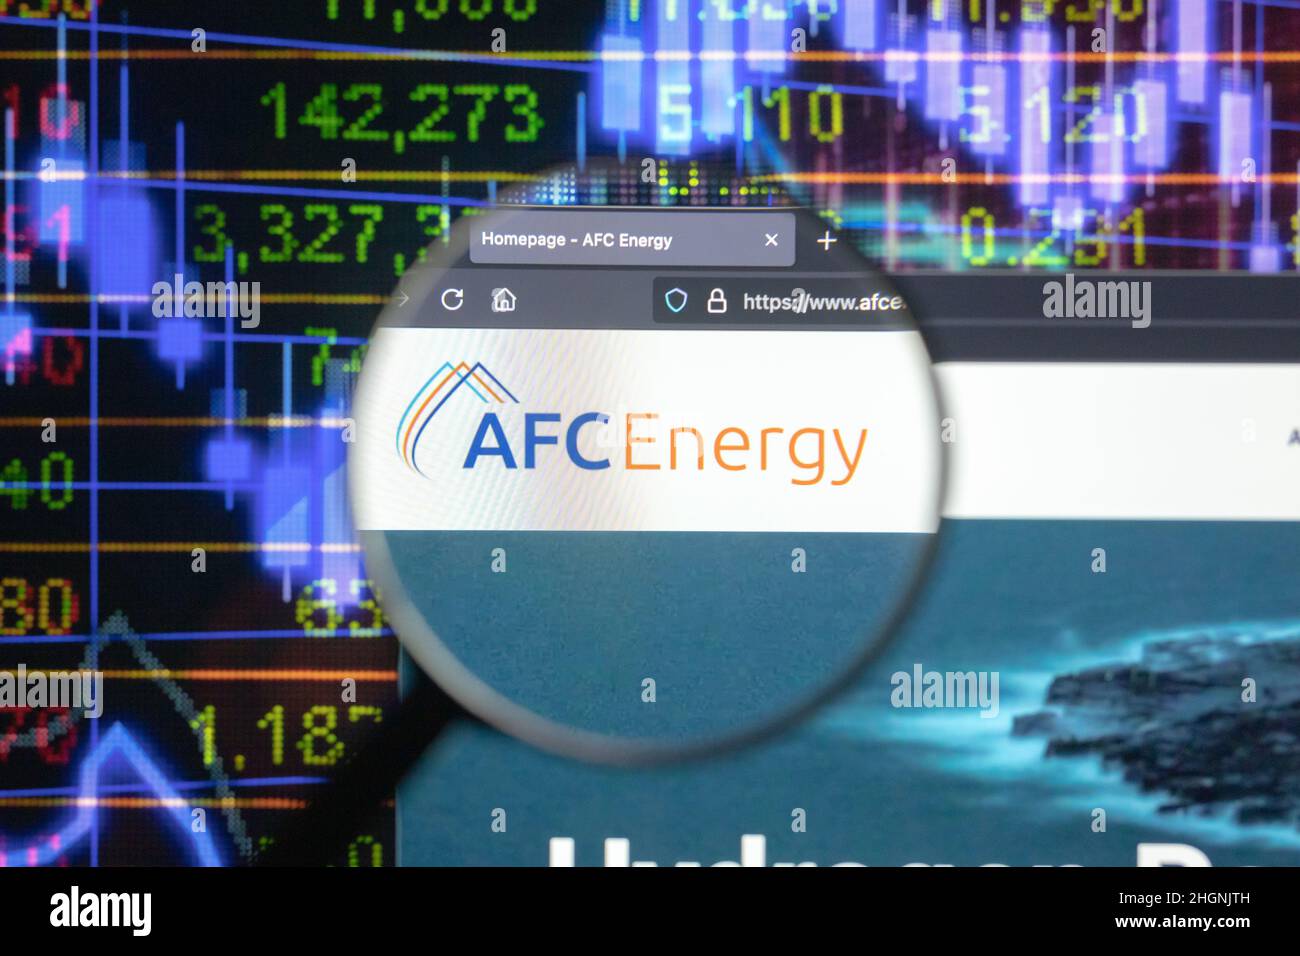 AFC Energy Company logo sur un site web avec des développements flous de marché boursier en arrière-plan, vu sur un écran d'ordinateur à travers une loupe. Banque D'Images